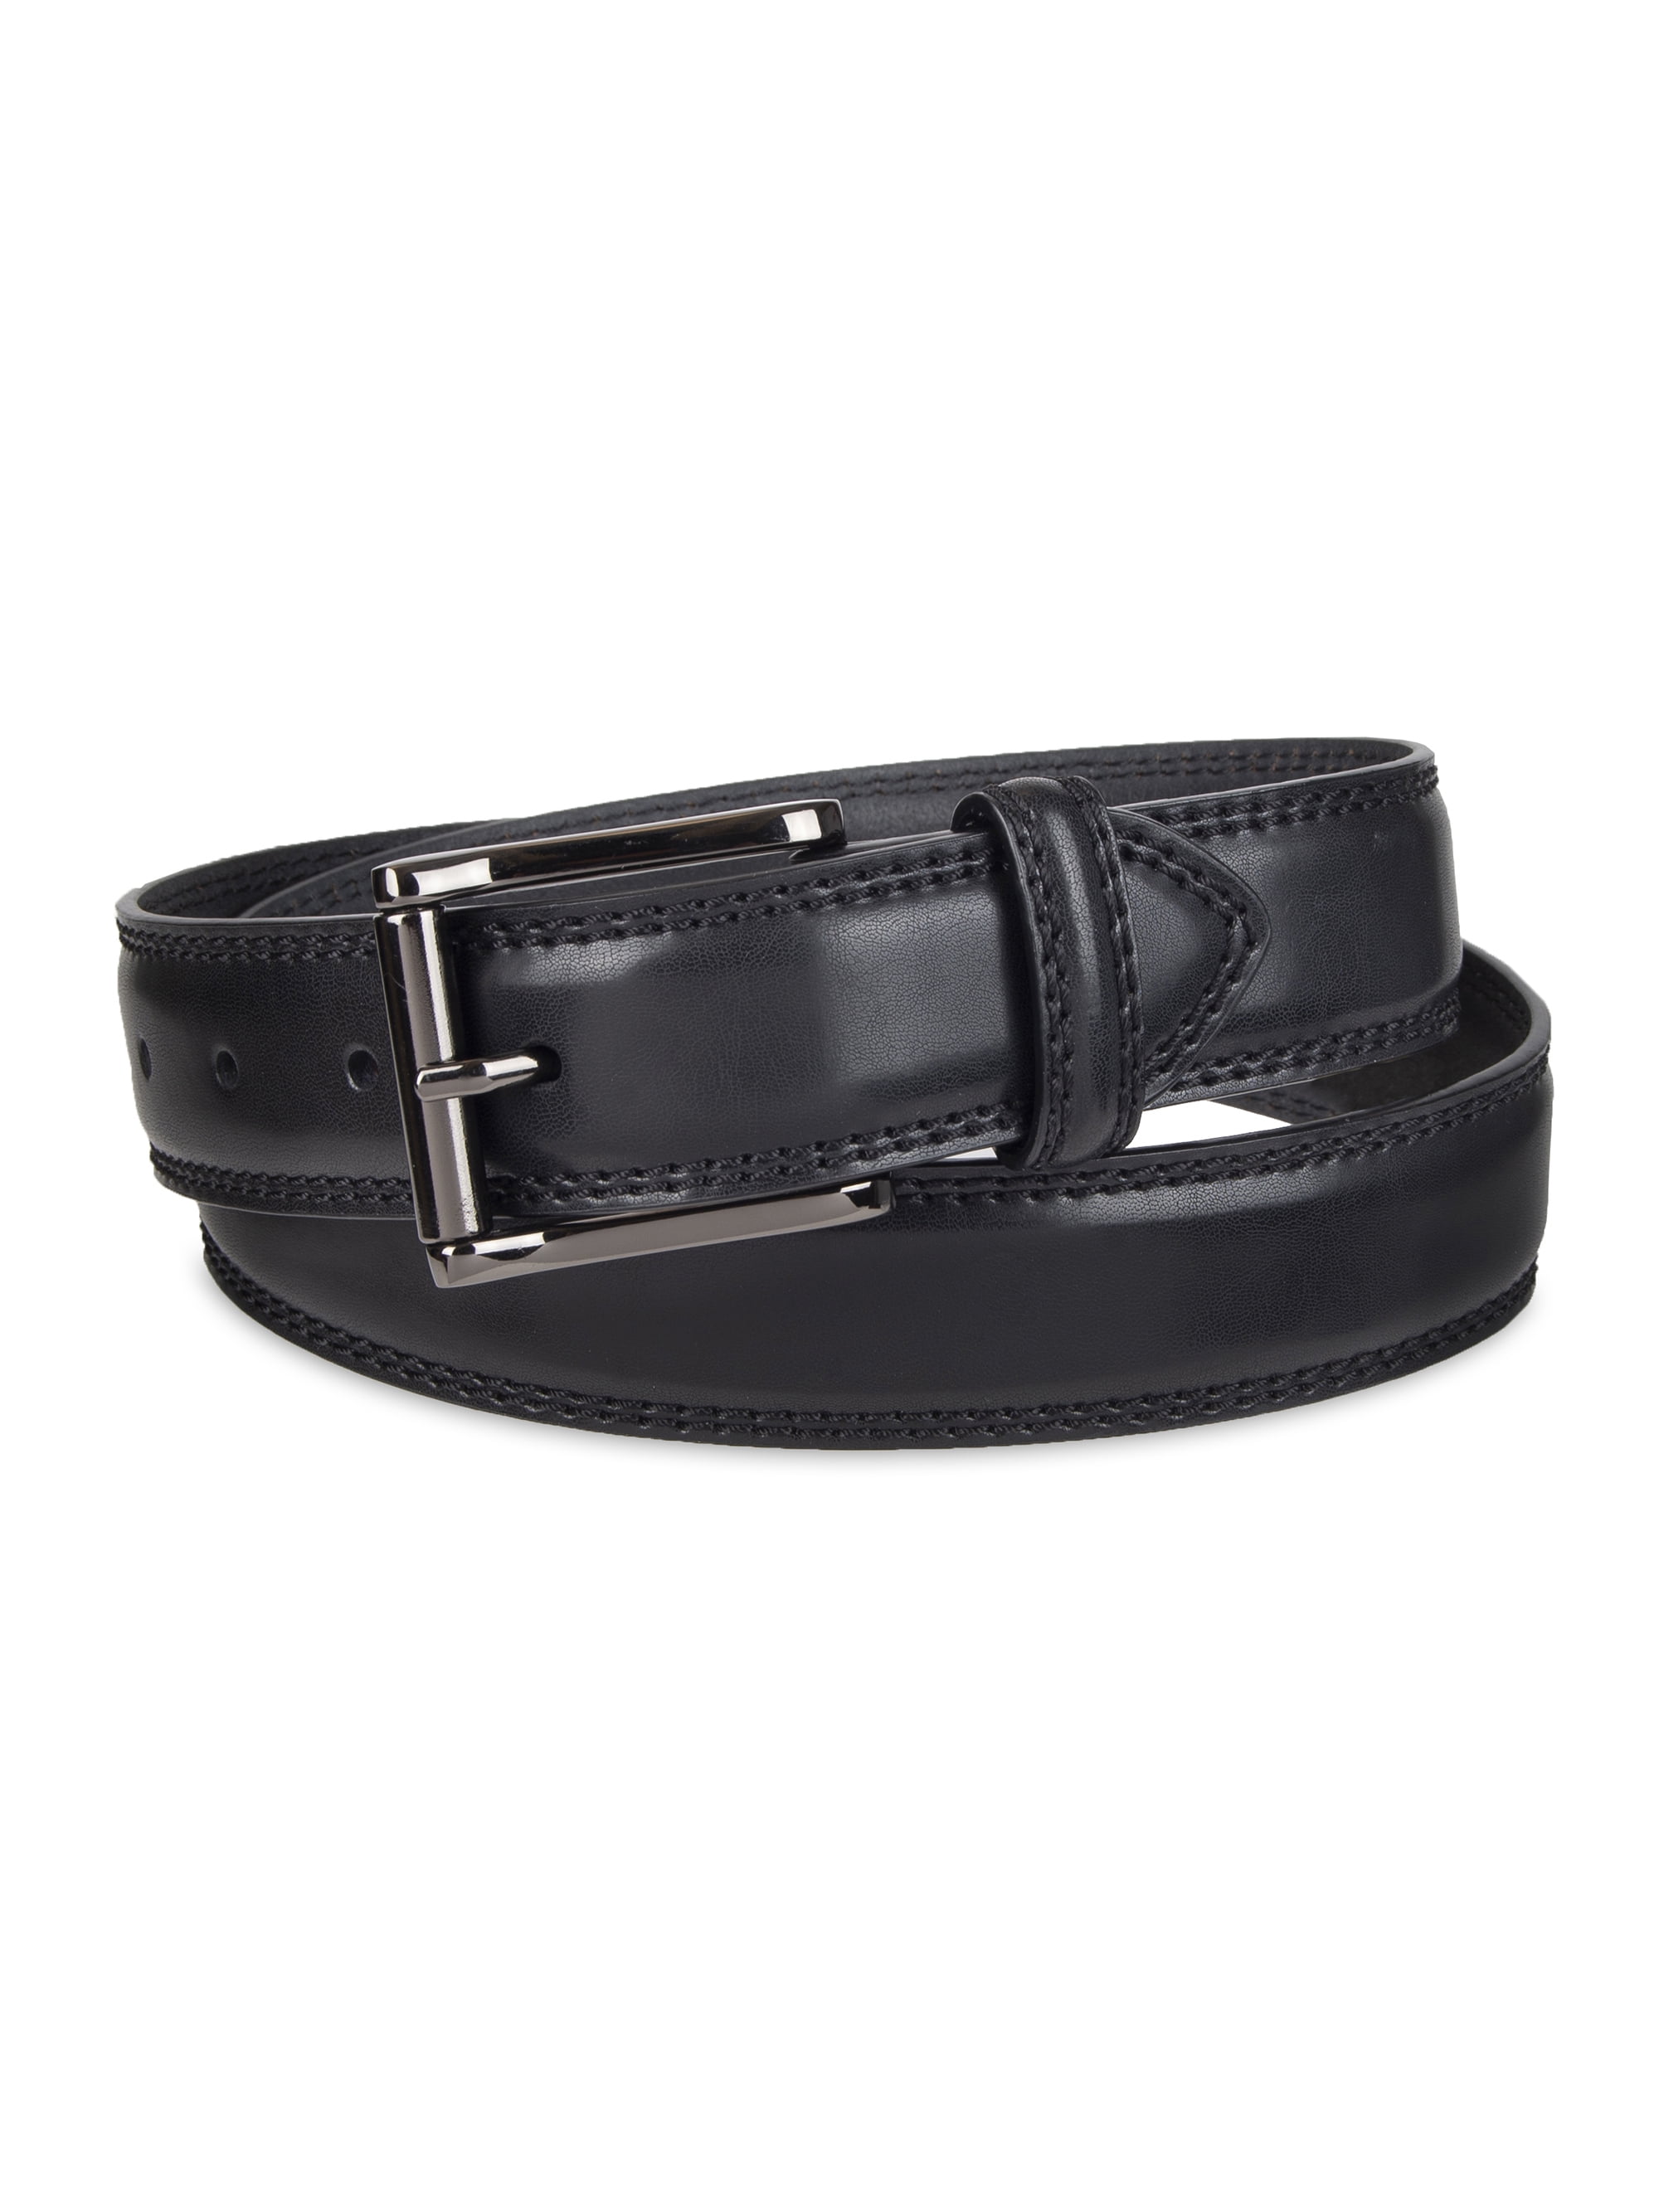 Genuine Dickies - Genuine Dickies Classic Leather Belt - Walmart.com